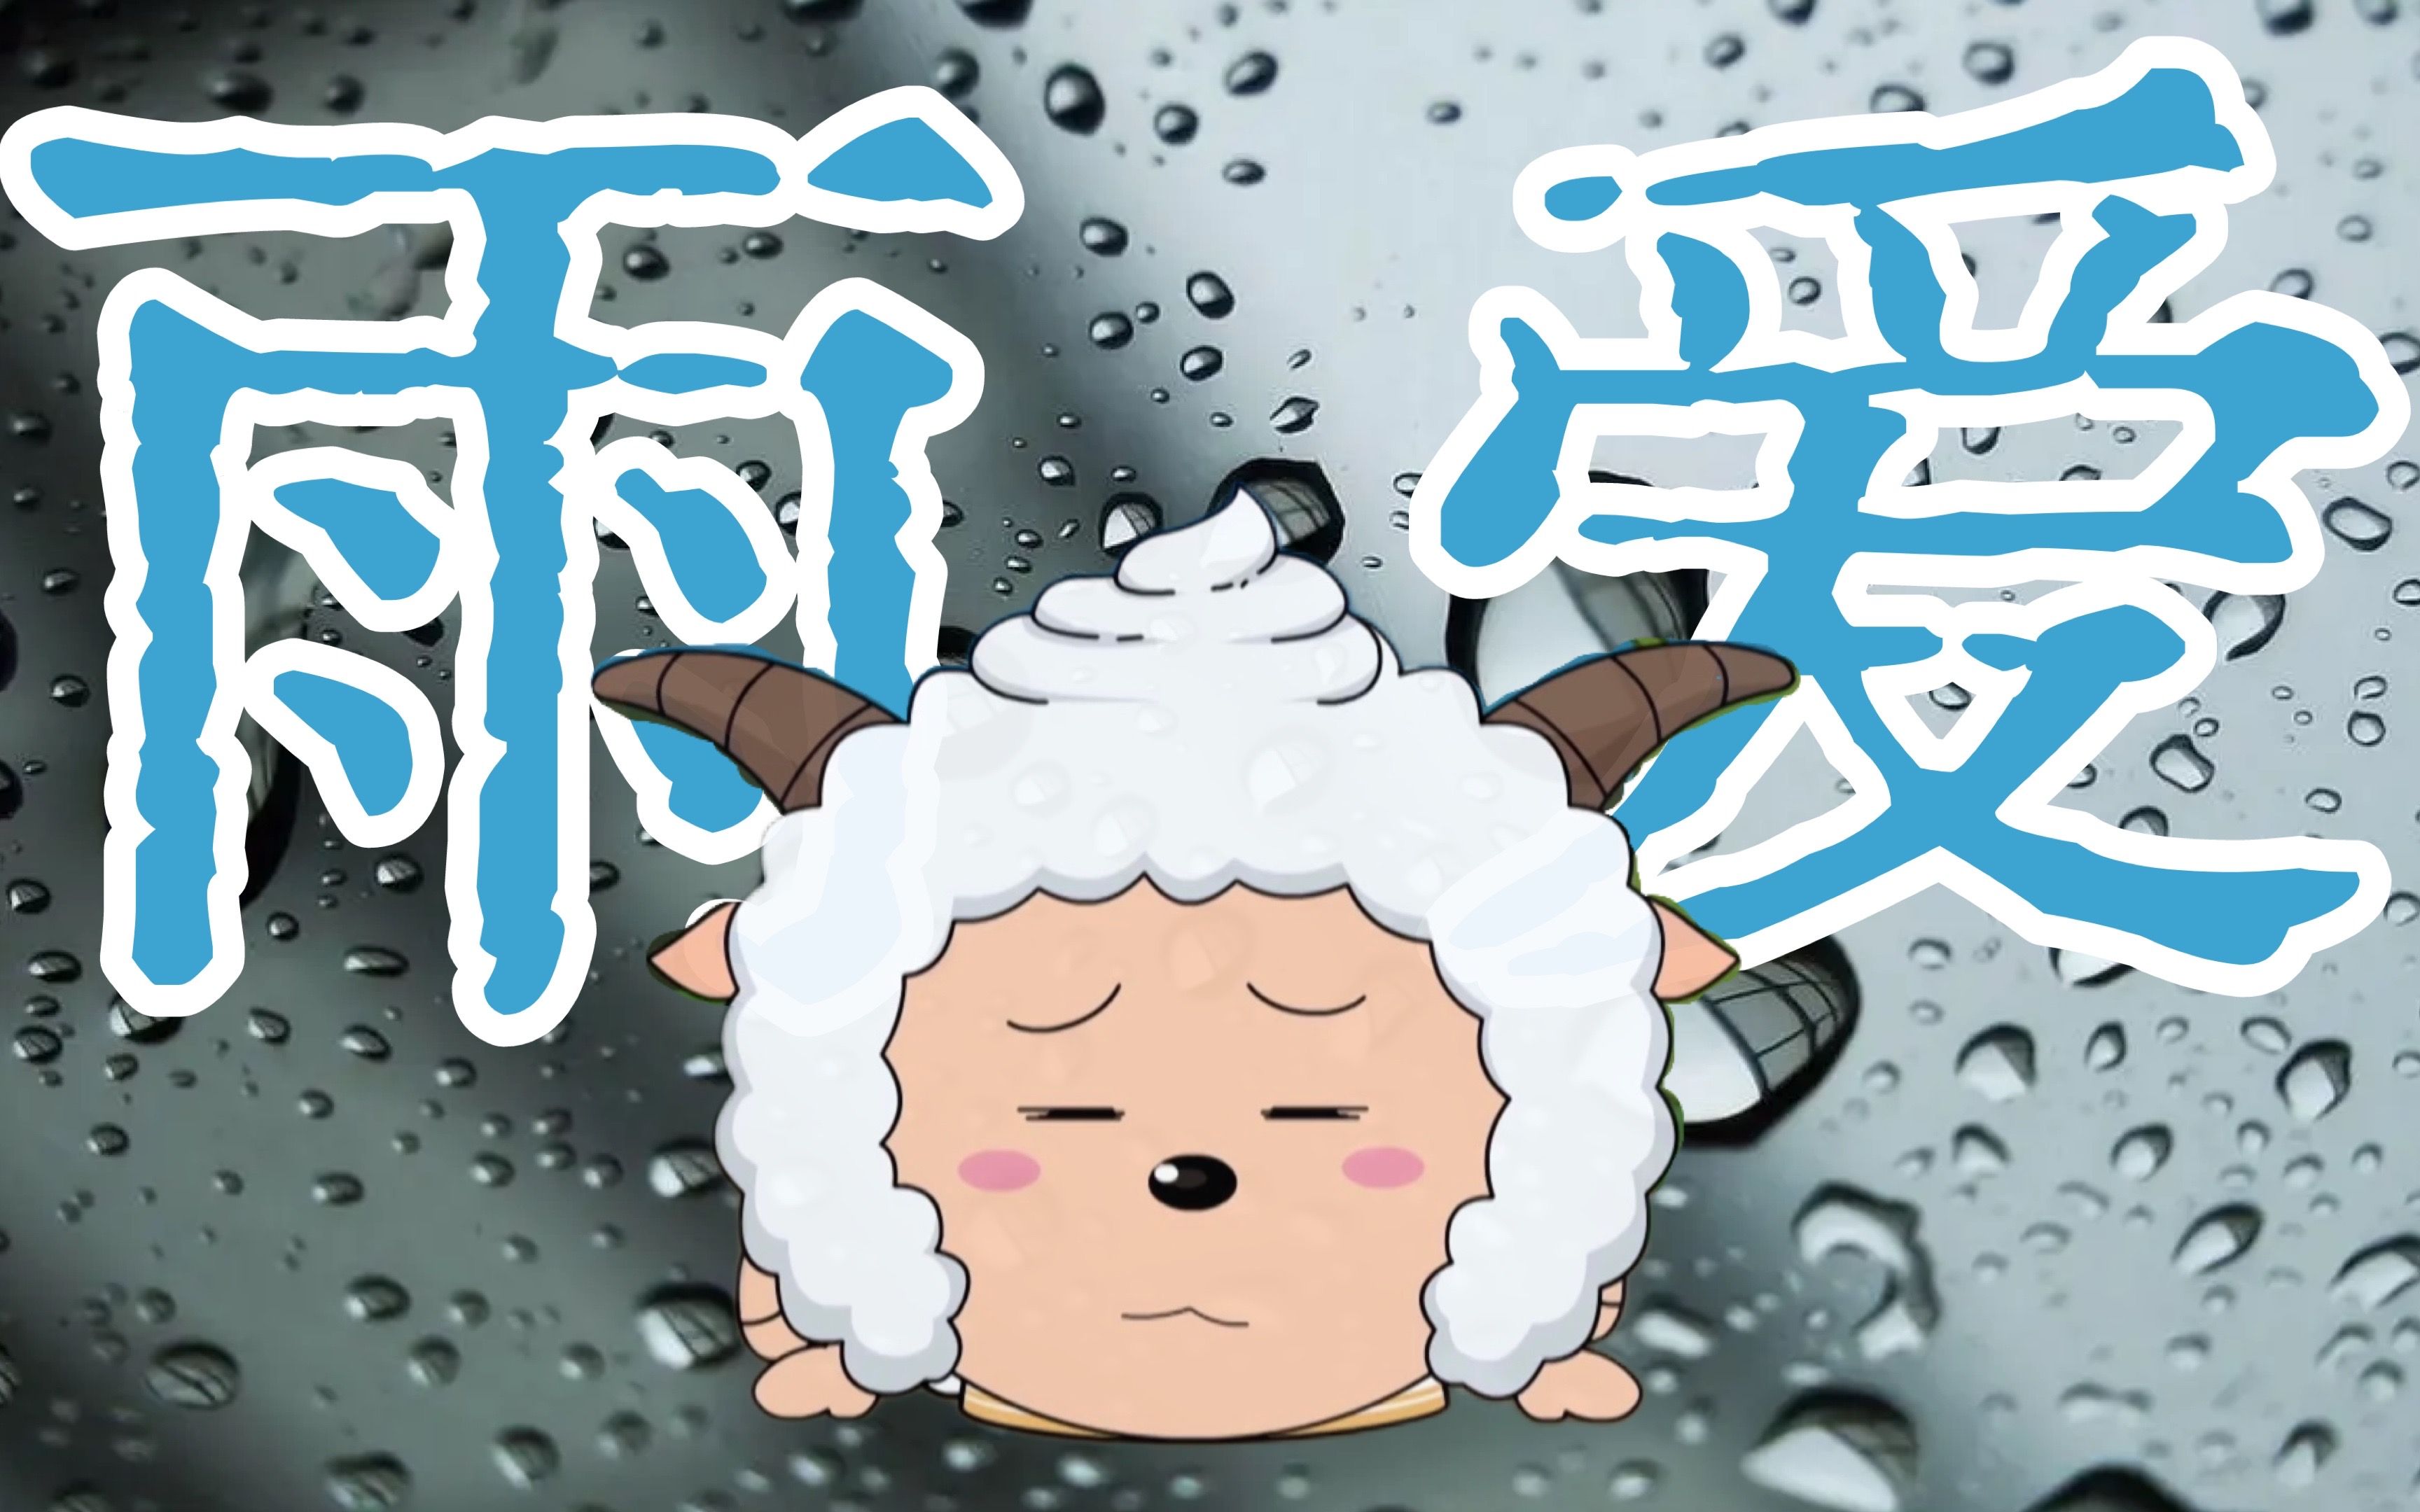 【AI 懒羊羊】翻唱《雨爱》🌧真希望雨能下不停🌧